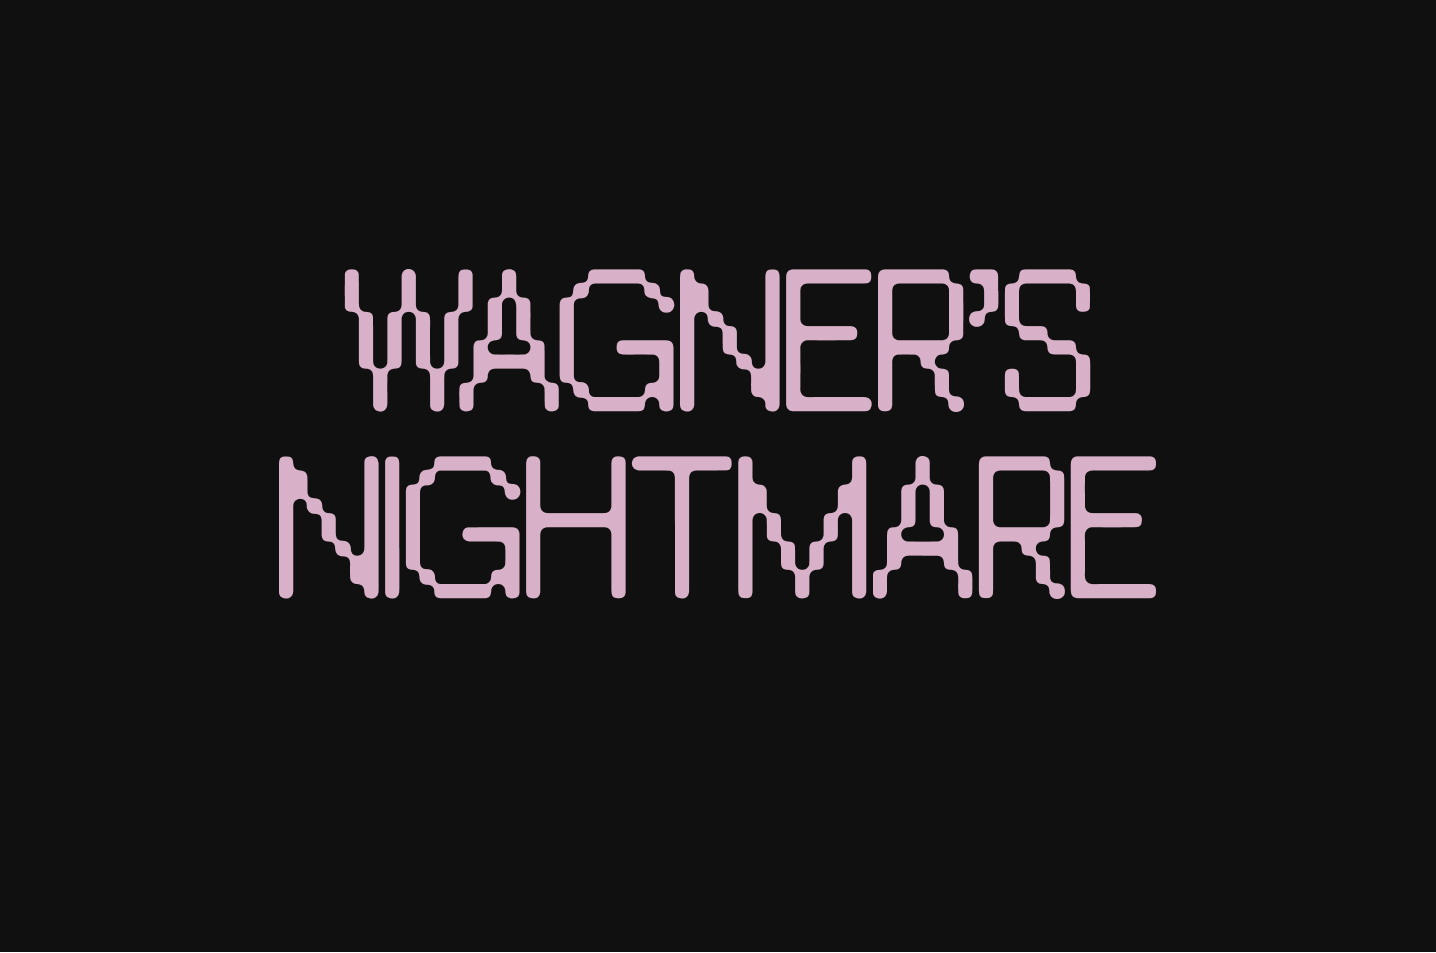 Wagner's Nightmare